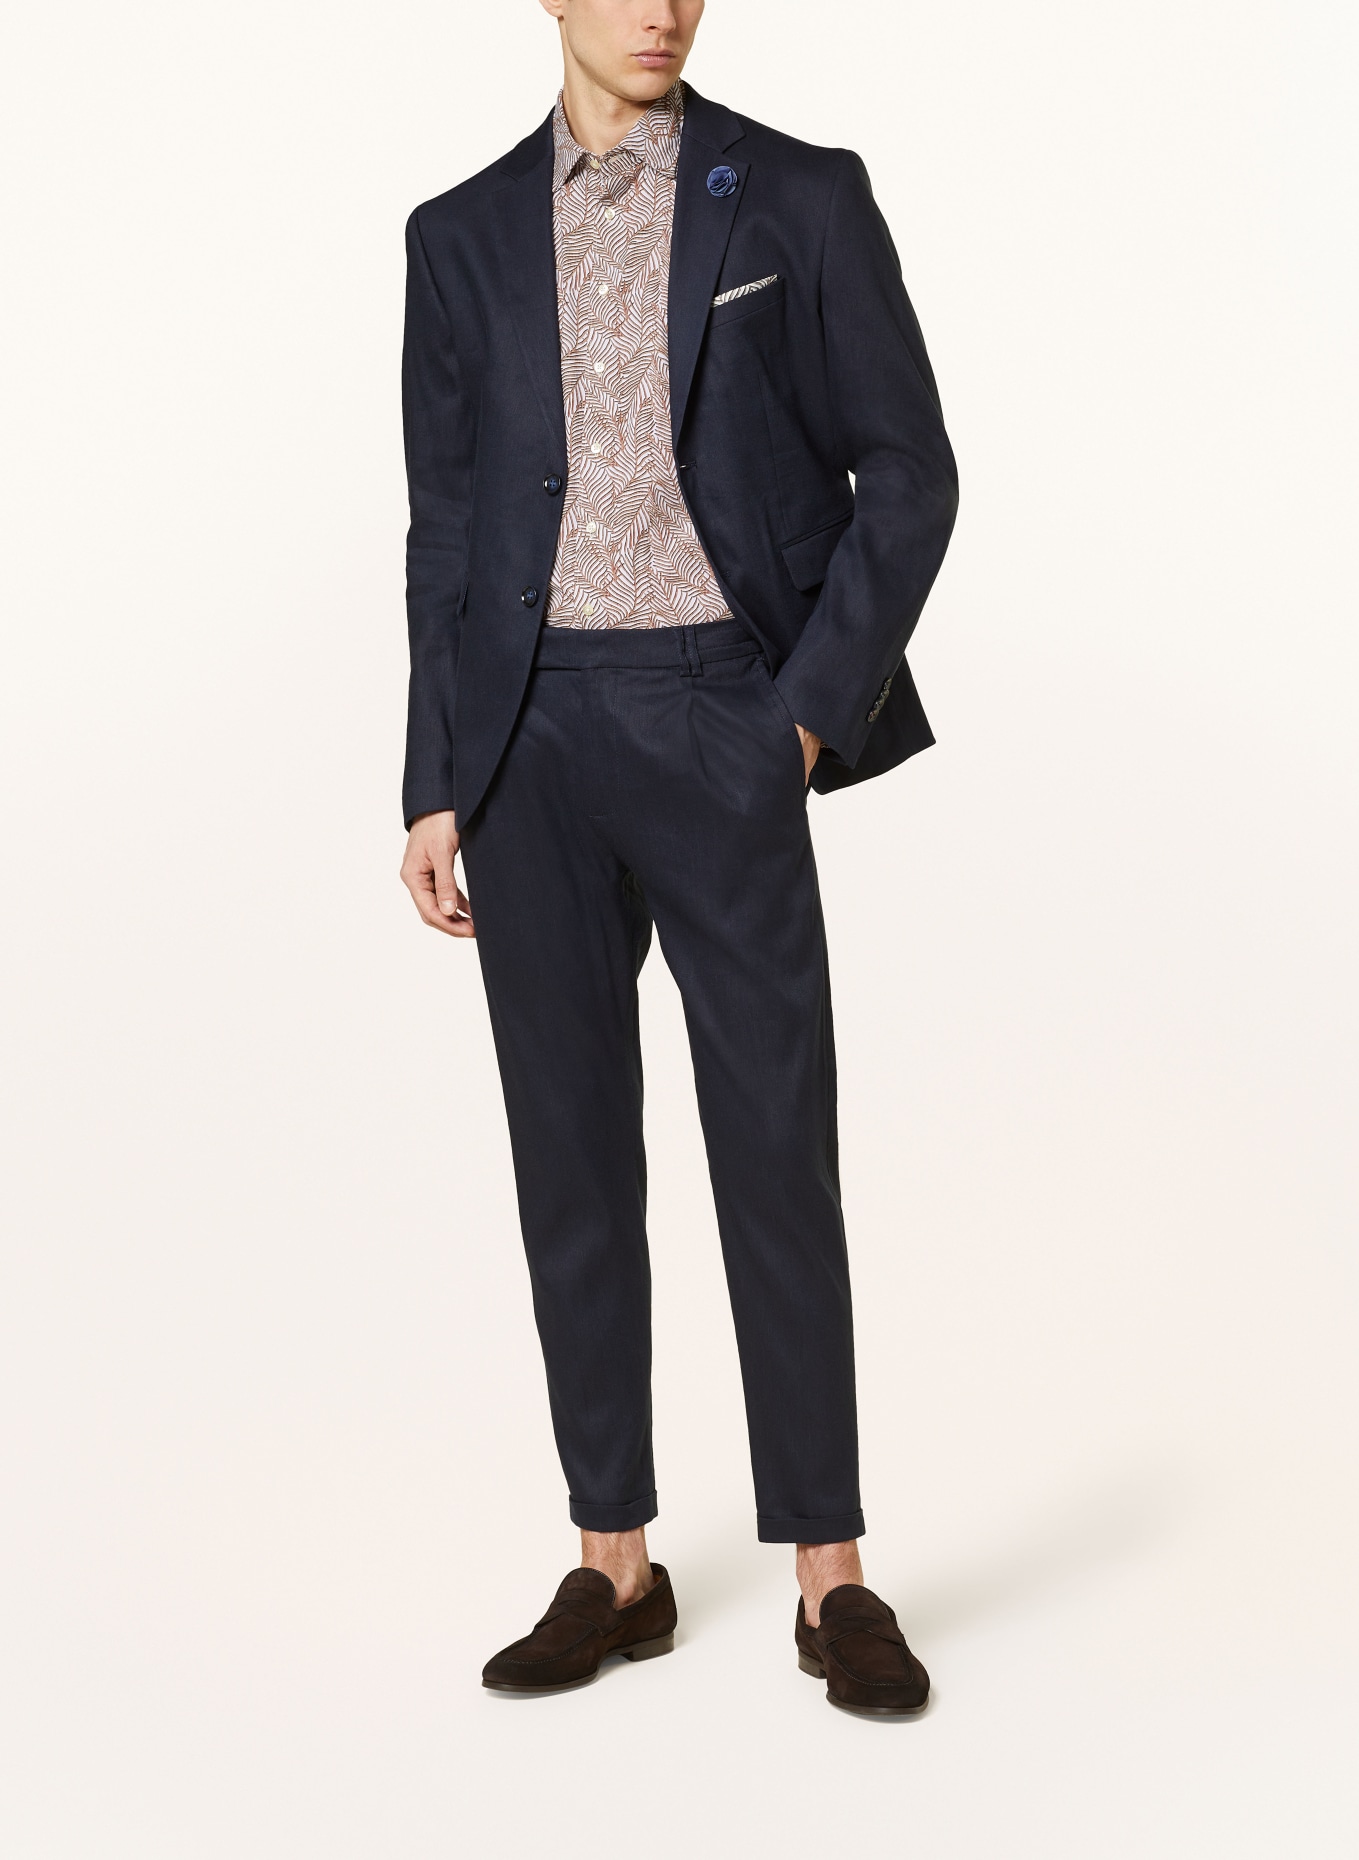 CINQUE Suit jacket CICAVA extra slim fit with linen, Color: 69 DUNKELBLAU (Image 2)